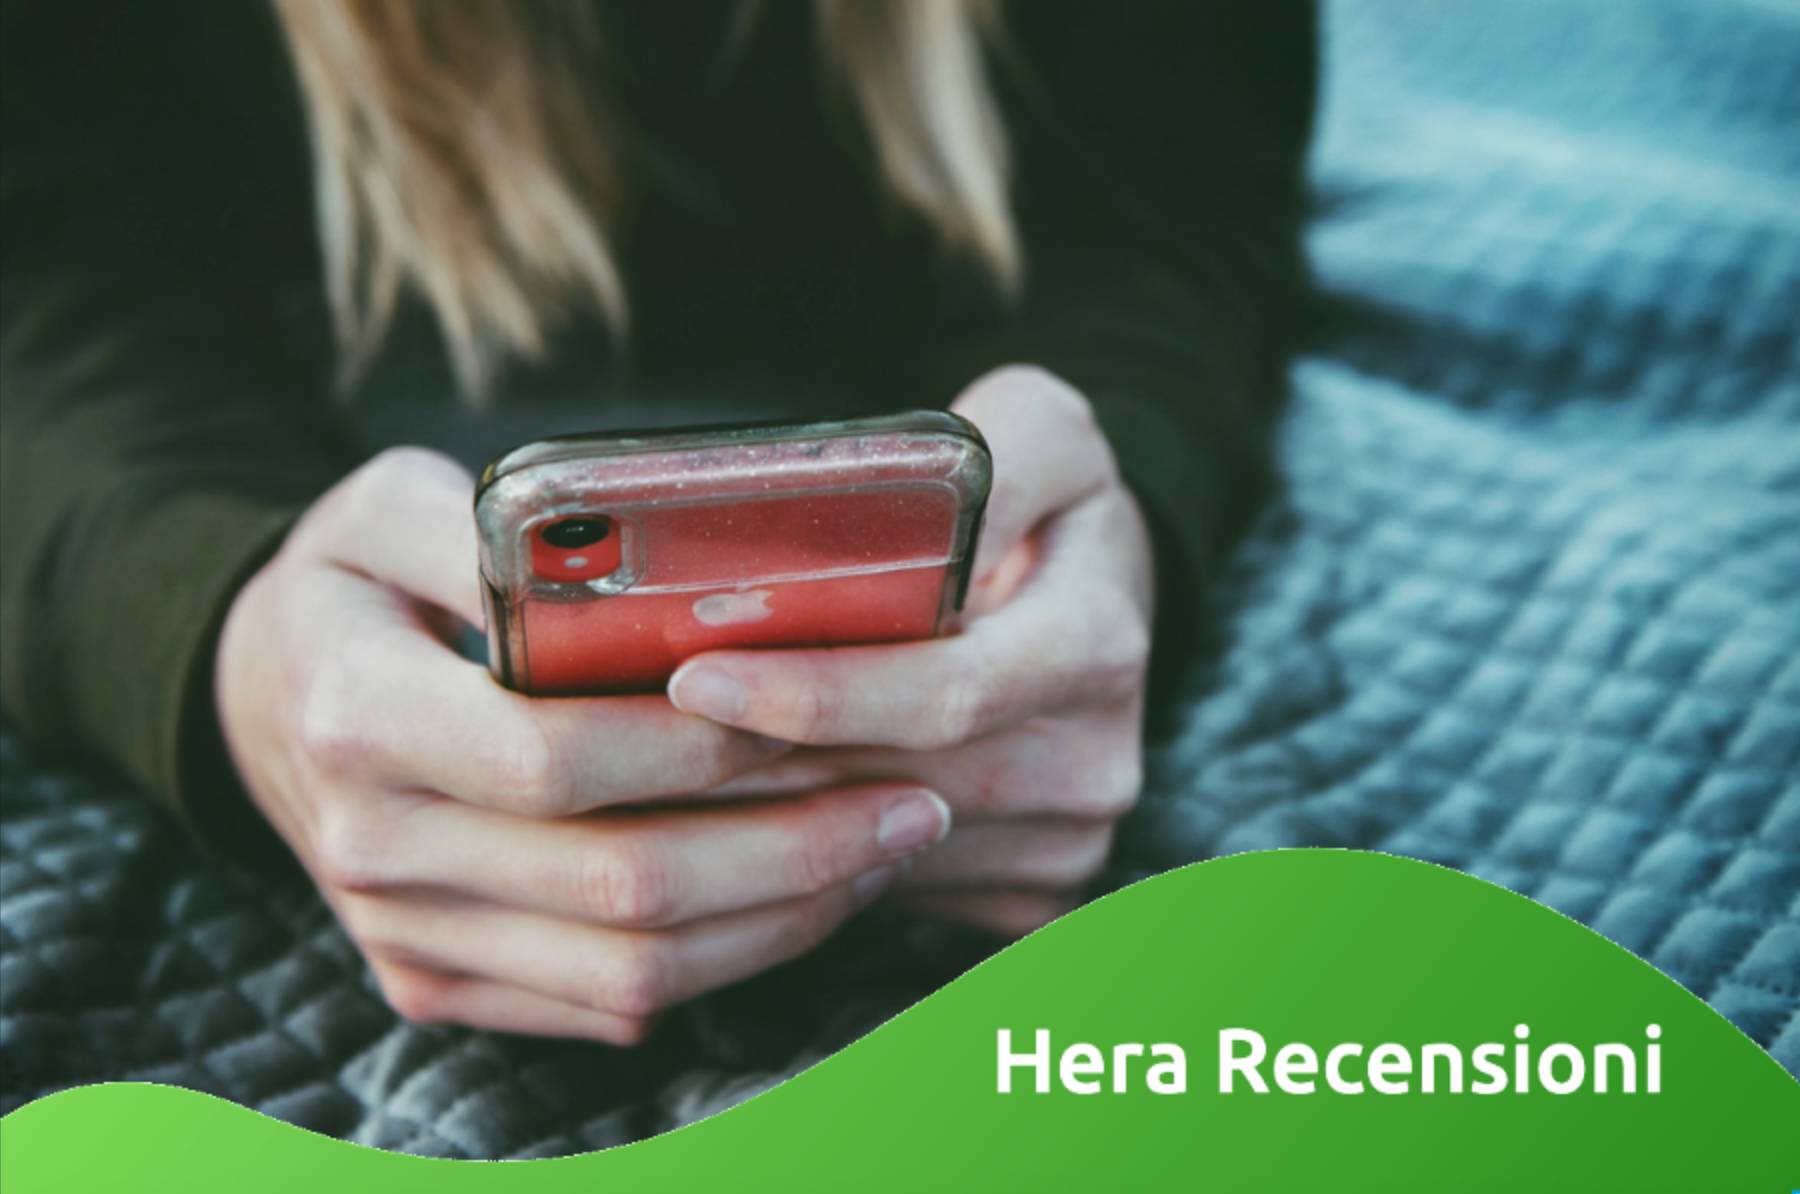 Cosa scrivono gli utenti nelle recensioni Hera online? La guida completa!